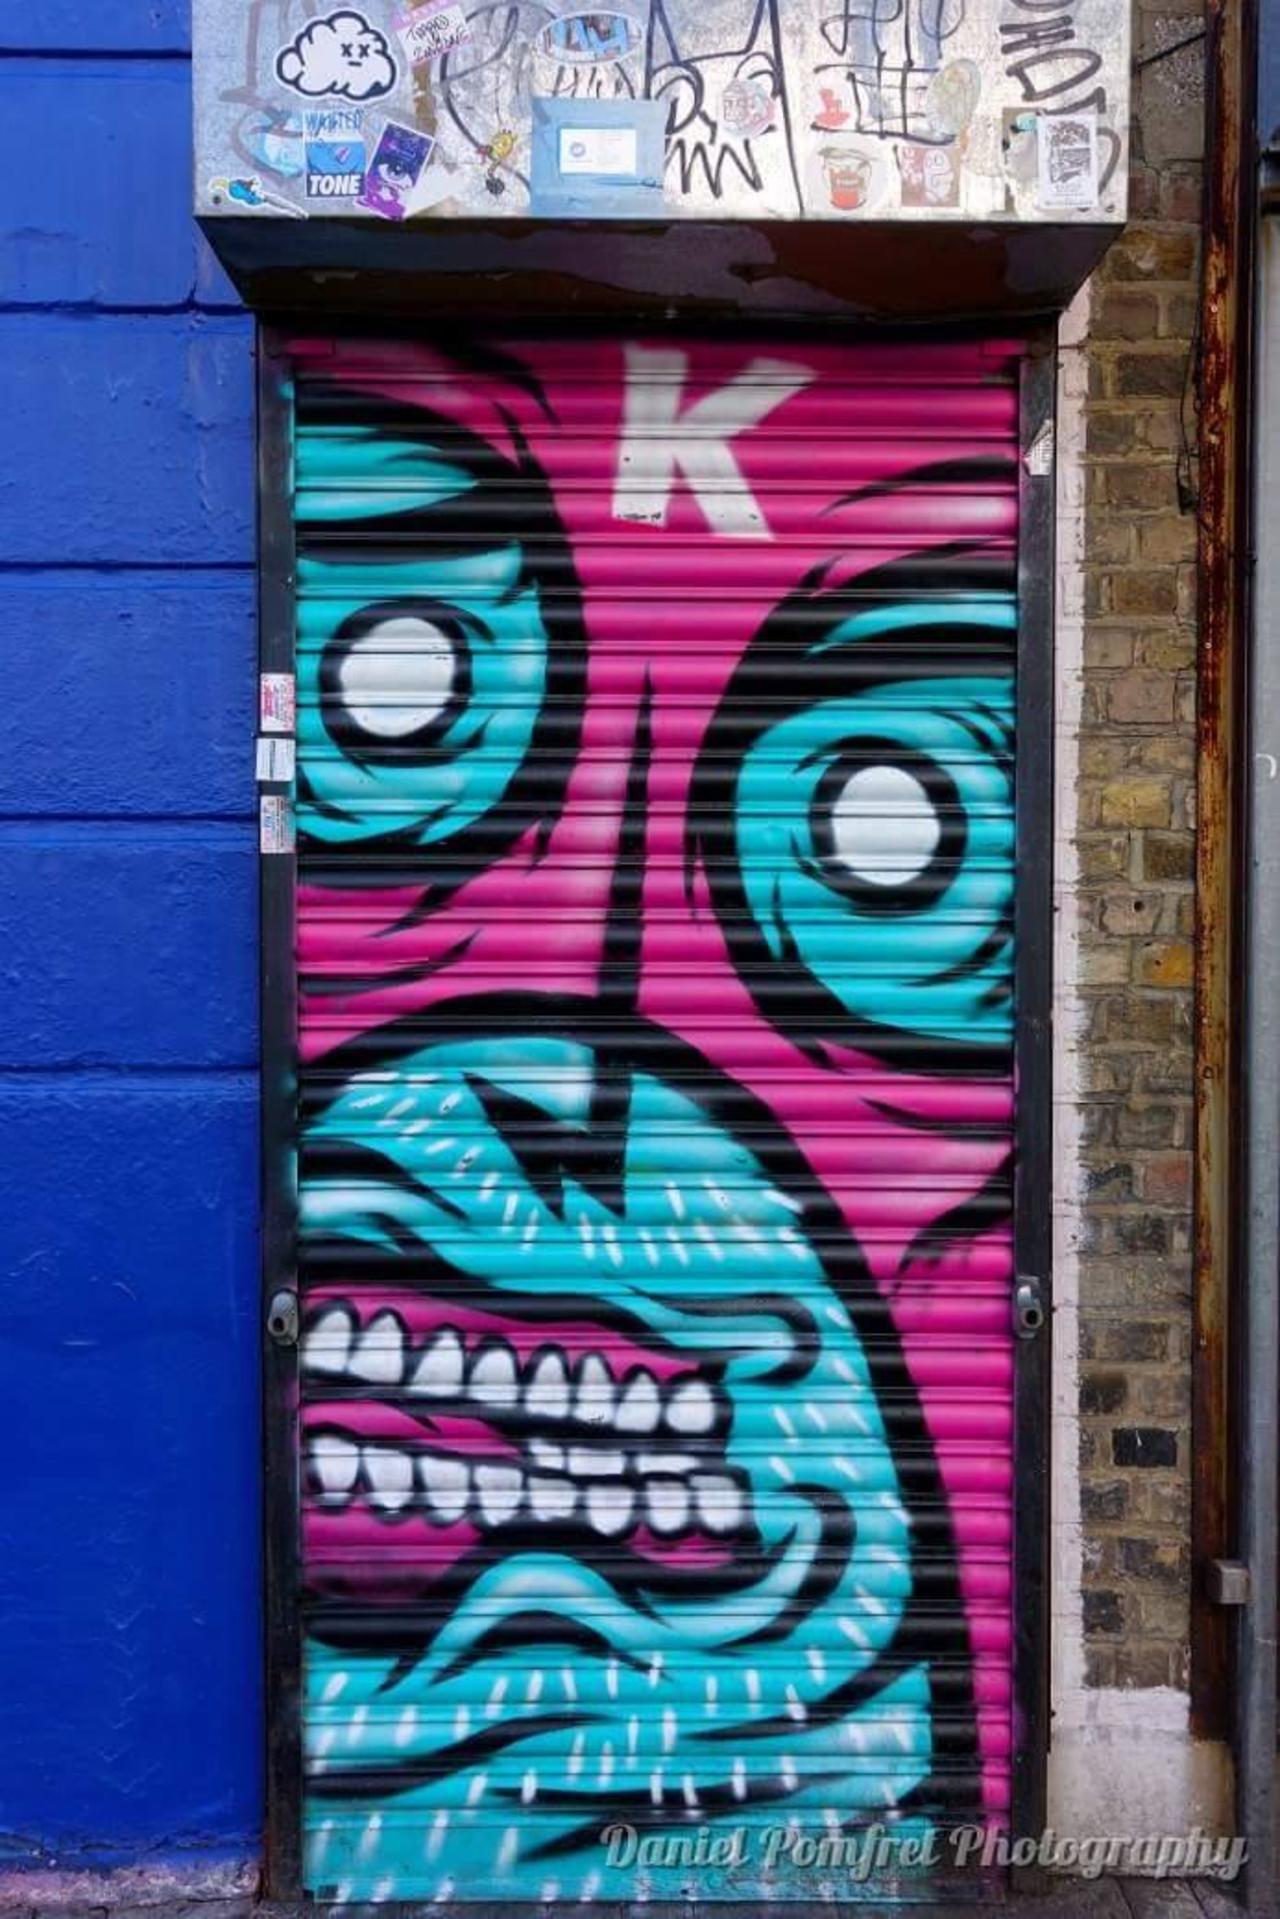 Street Art by Captain Kris. #streetart #graffiti #London #urbanlondon #camden http://t.co/sLQdSk3HWp